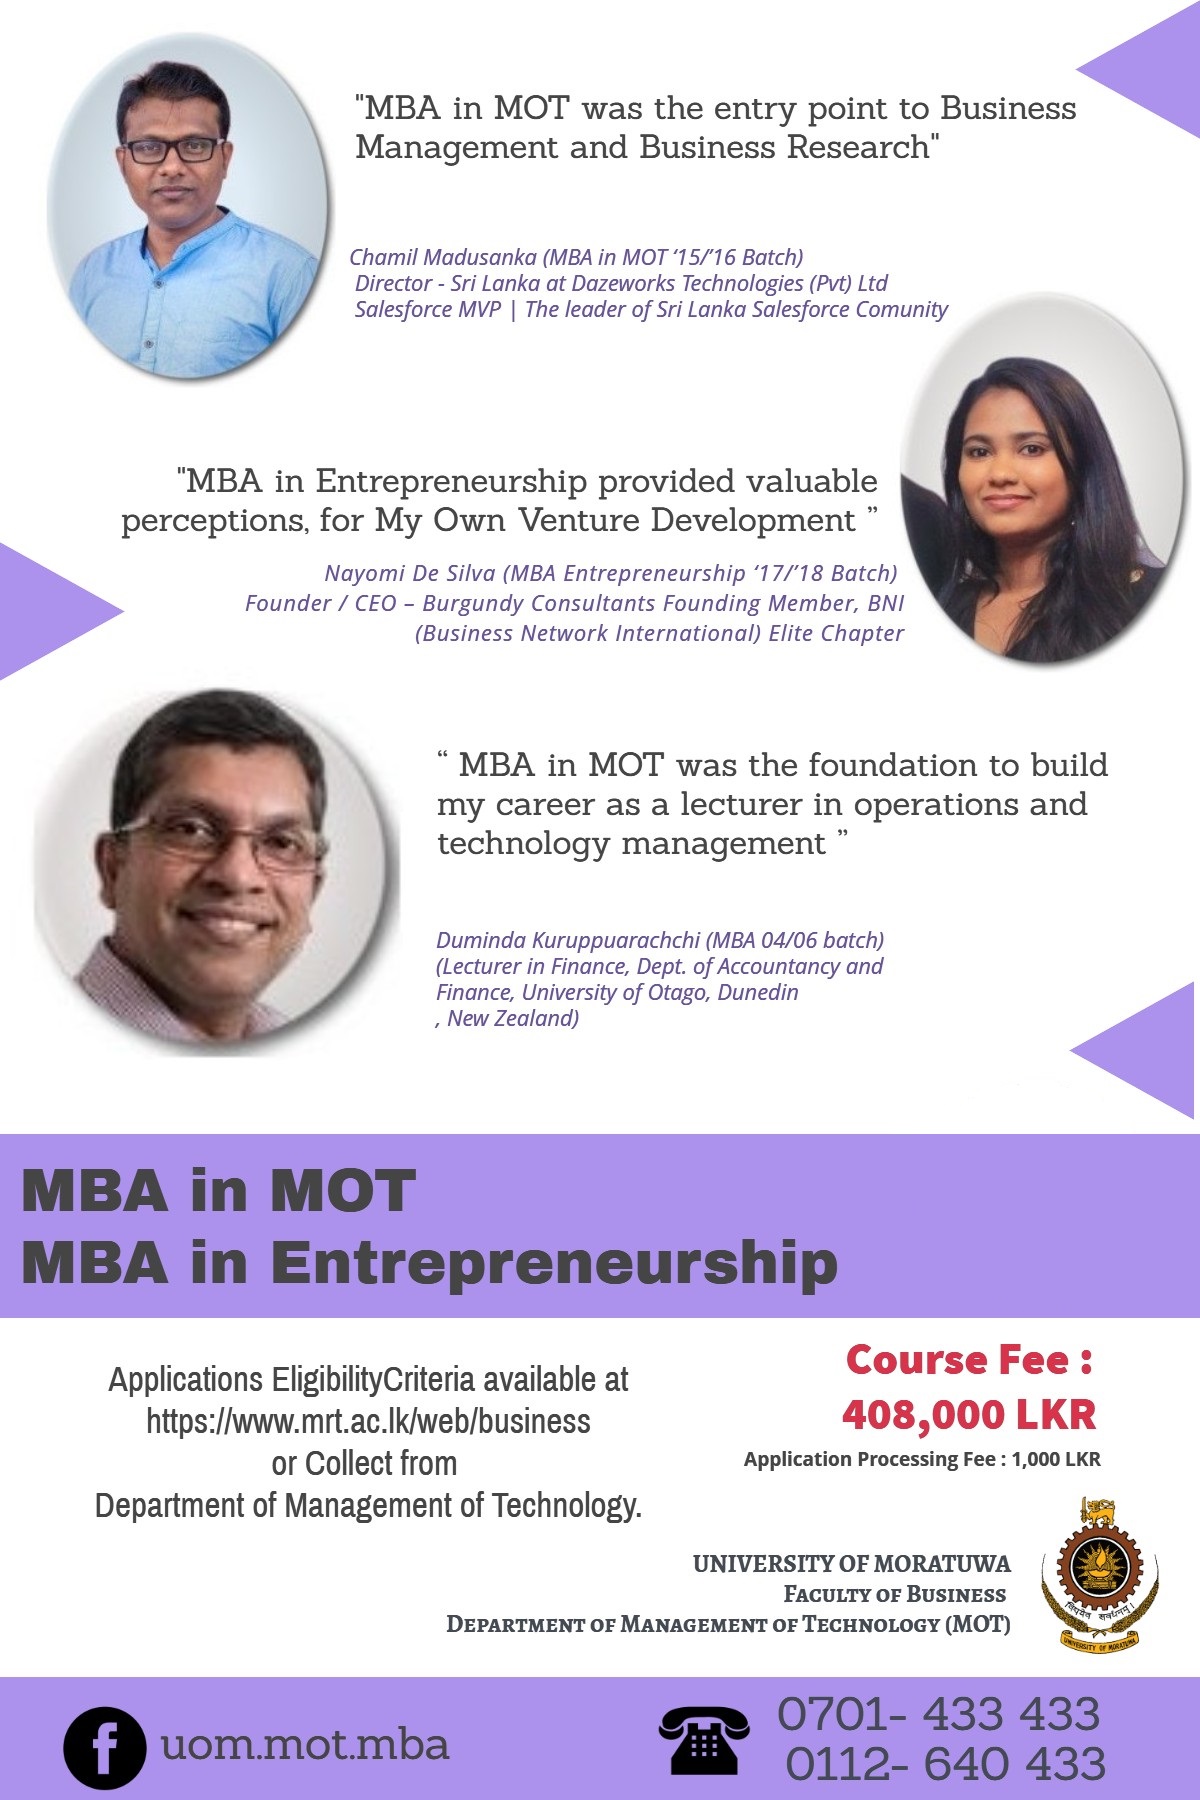 MBA in MOT and Entrepreneurship